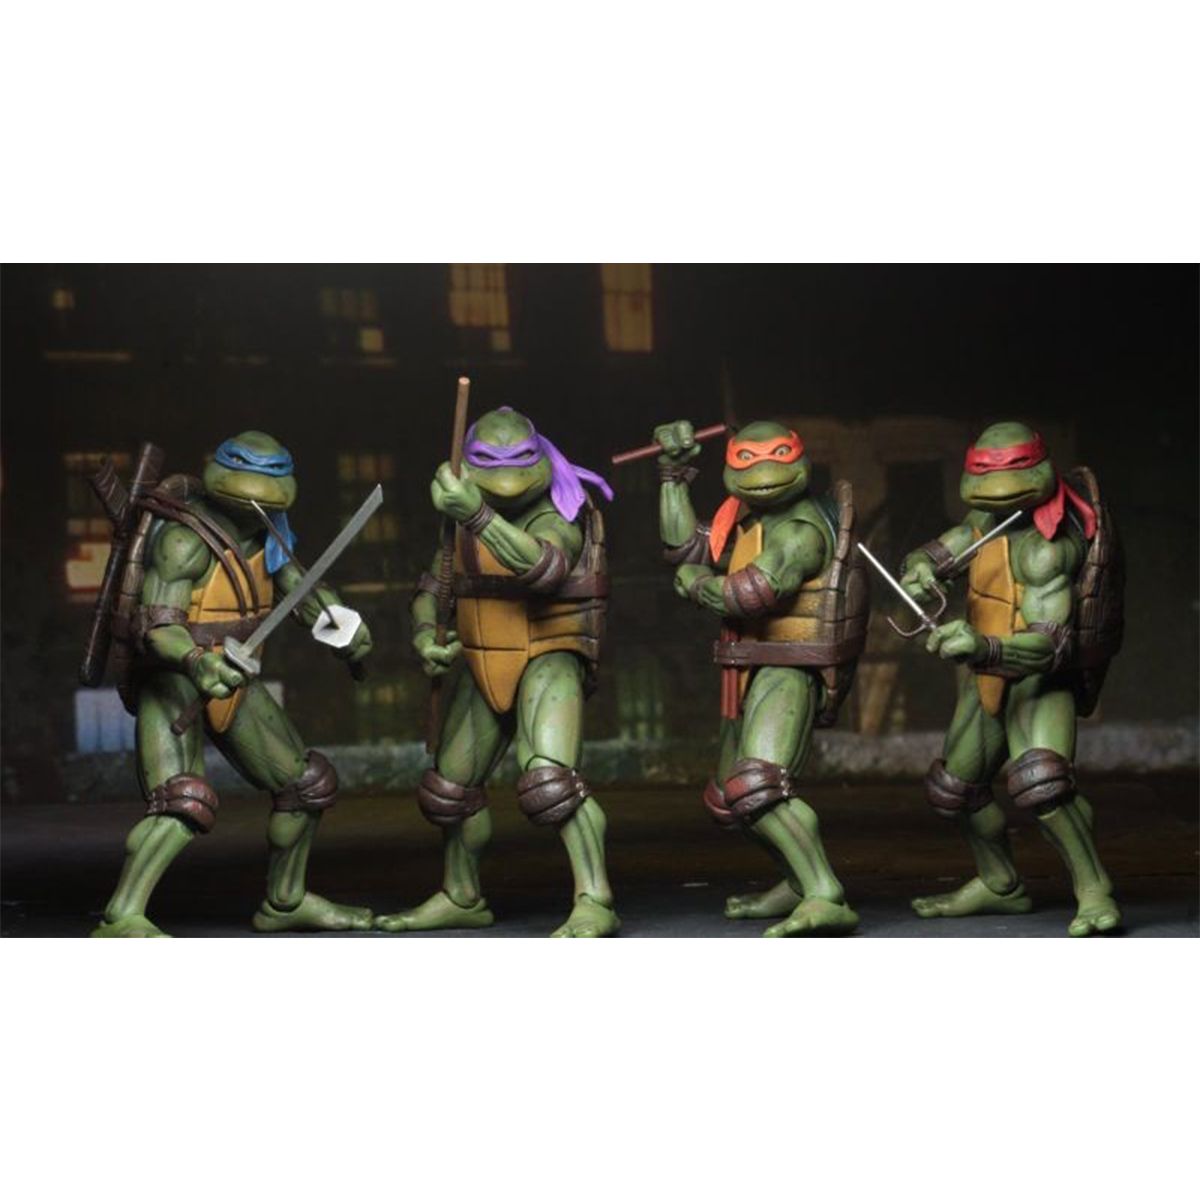 اکشن فیگور نکا مدل لاکپشت های نینجا طرح Turtle Ninja مجموعه 4 عددی -  - 13